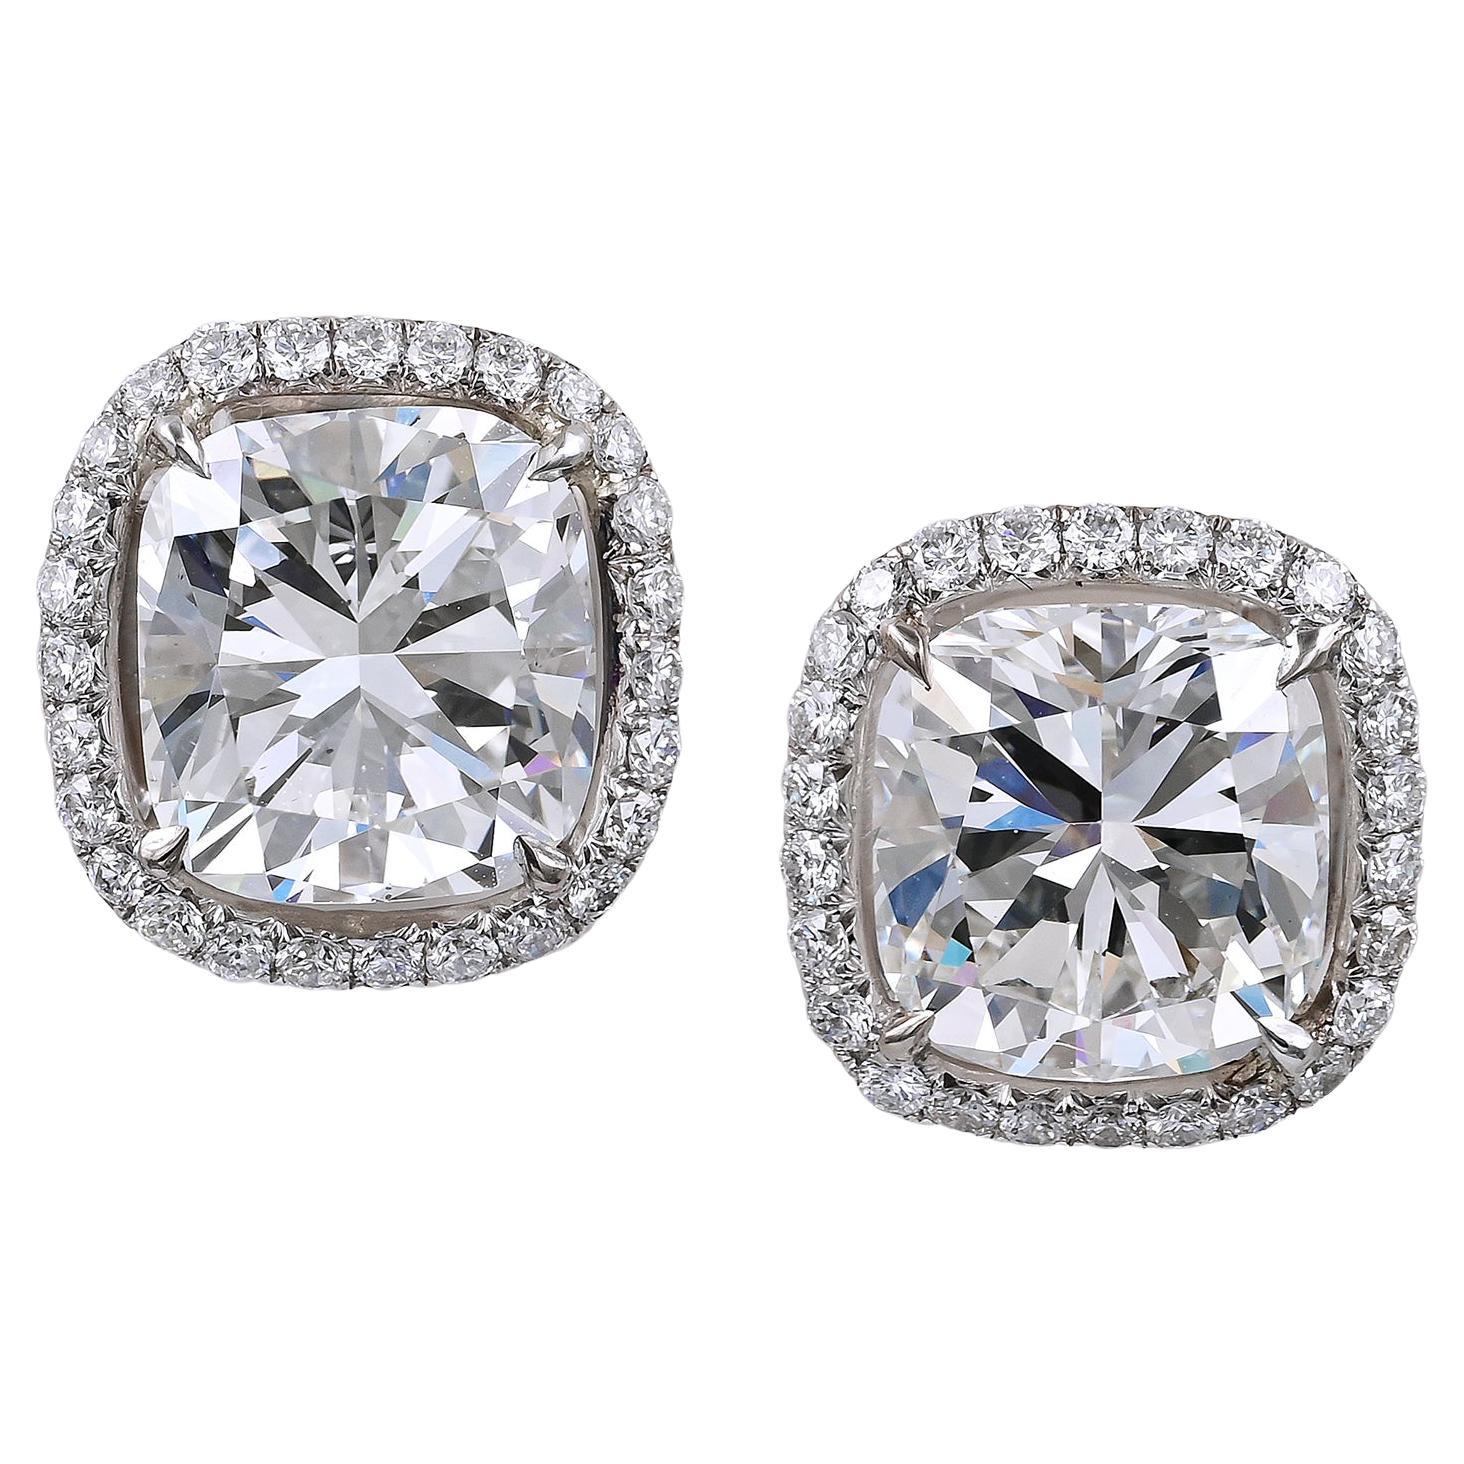 Spectra Fine Jewelry GIA Certified Cushion-Cut Diamond Stud Earrings For Sale